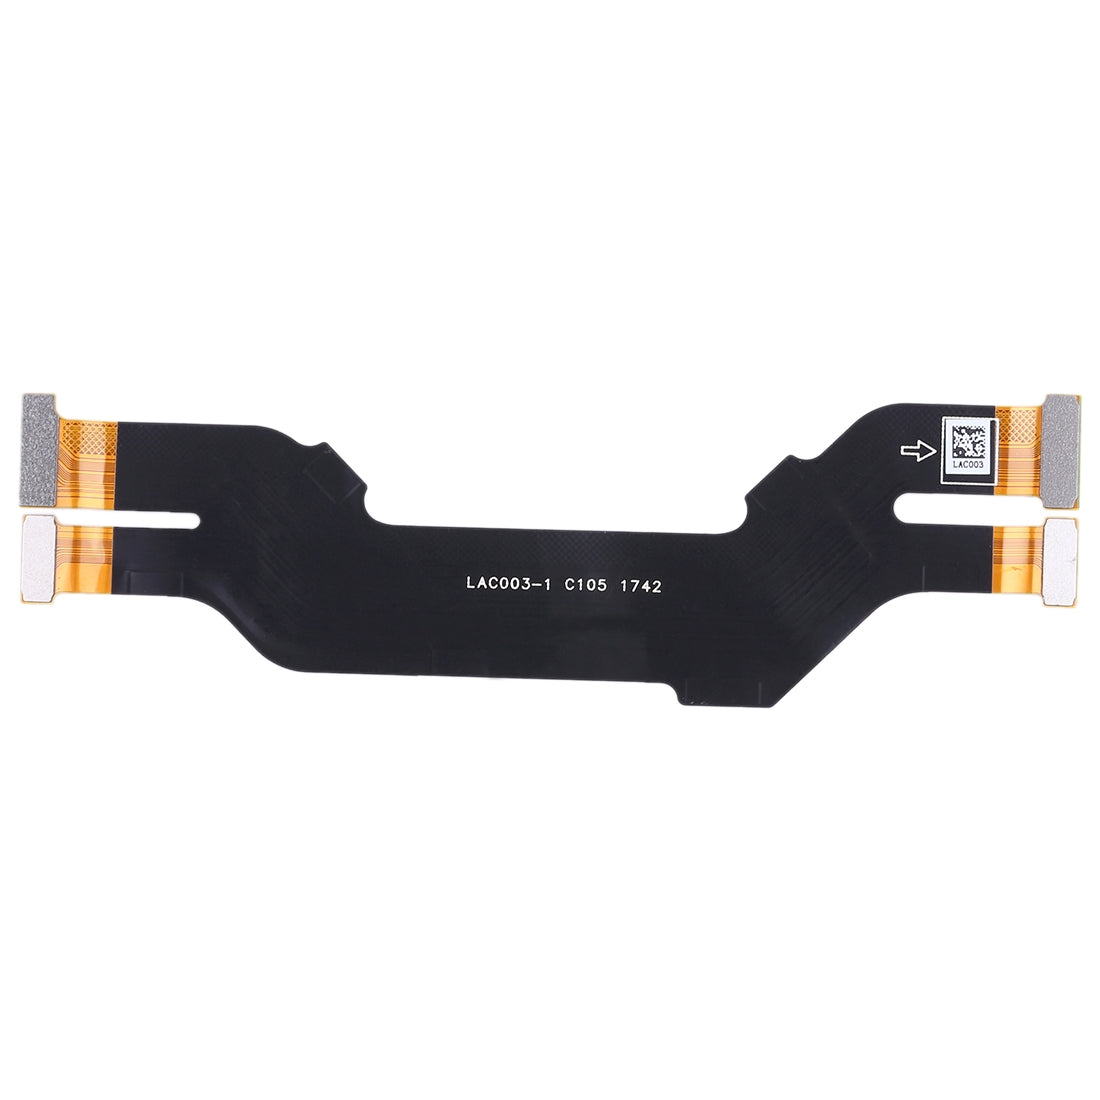 Oppo R11s Board Connector Flex Cable